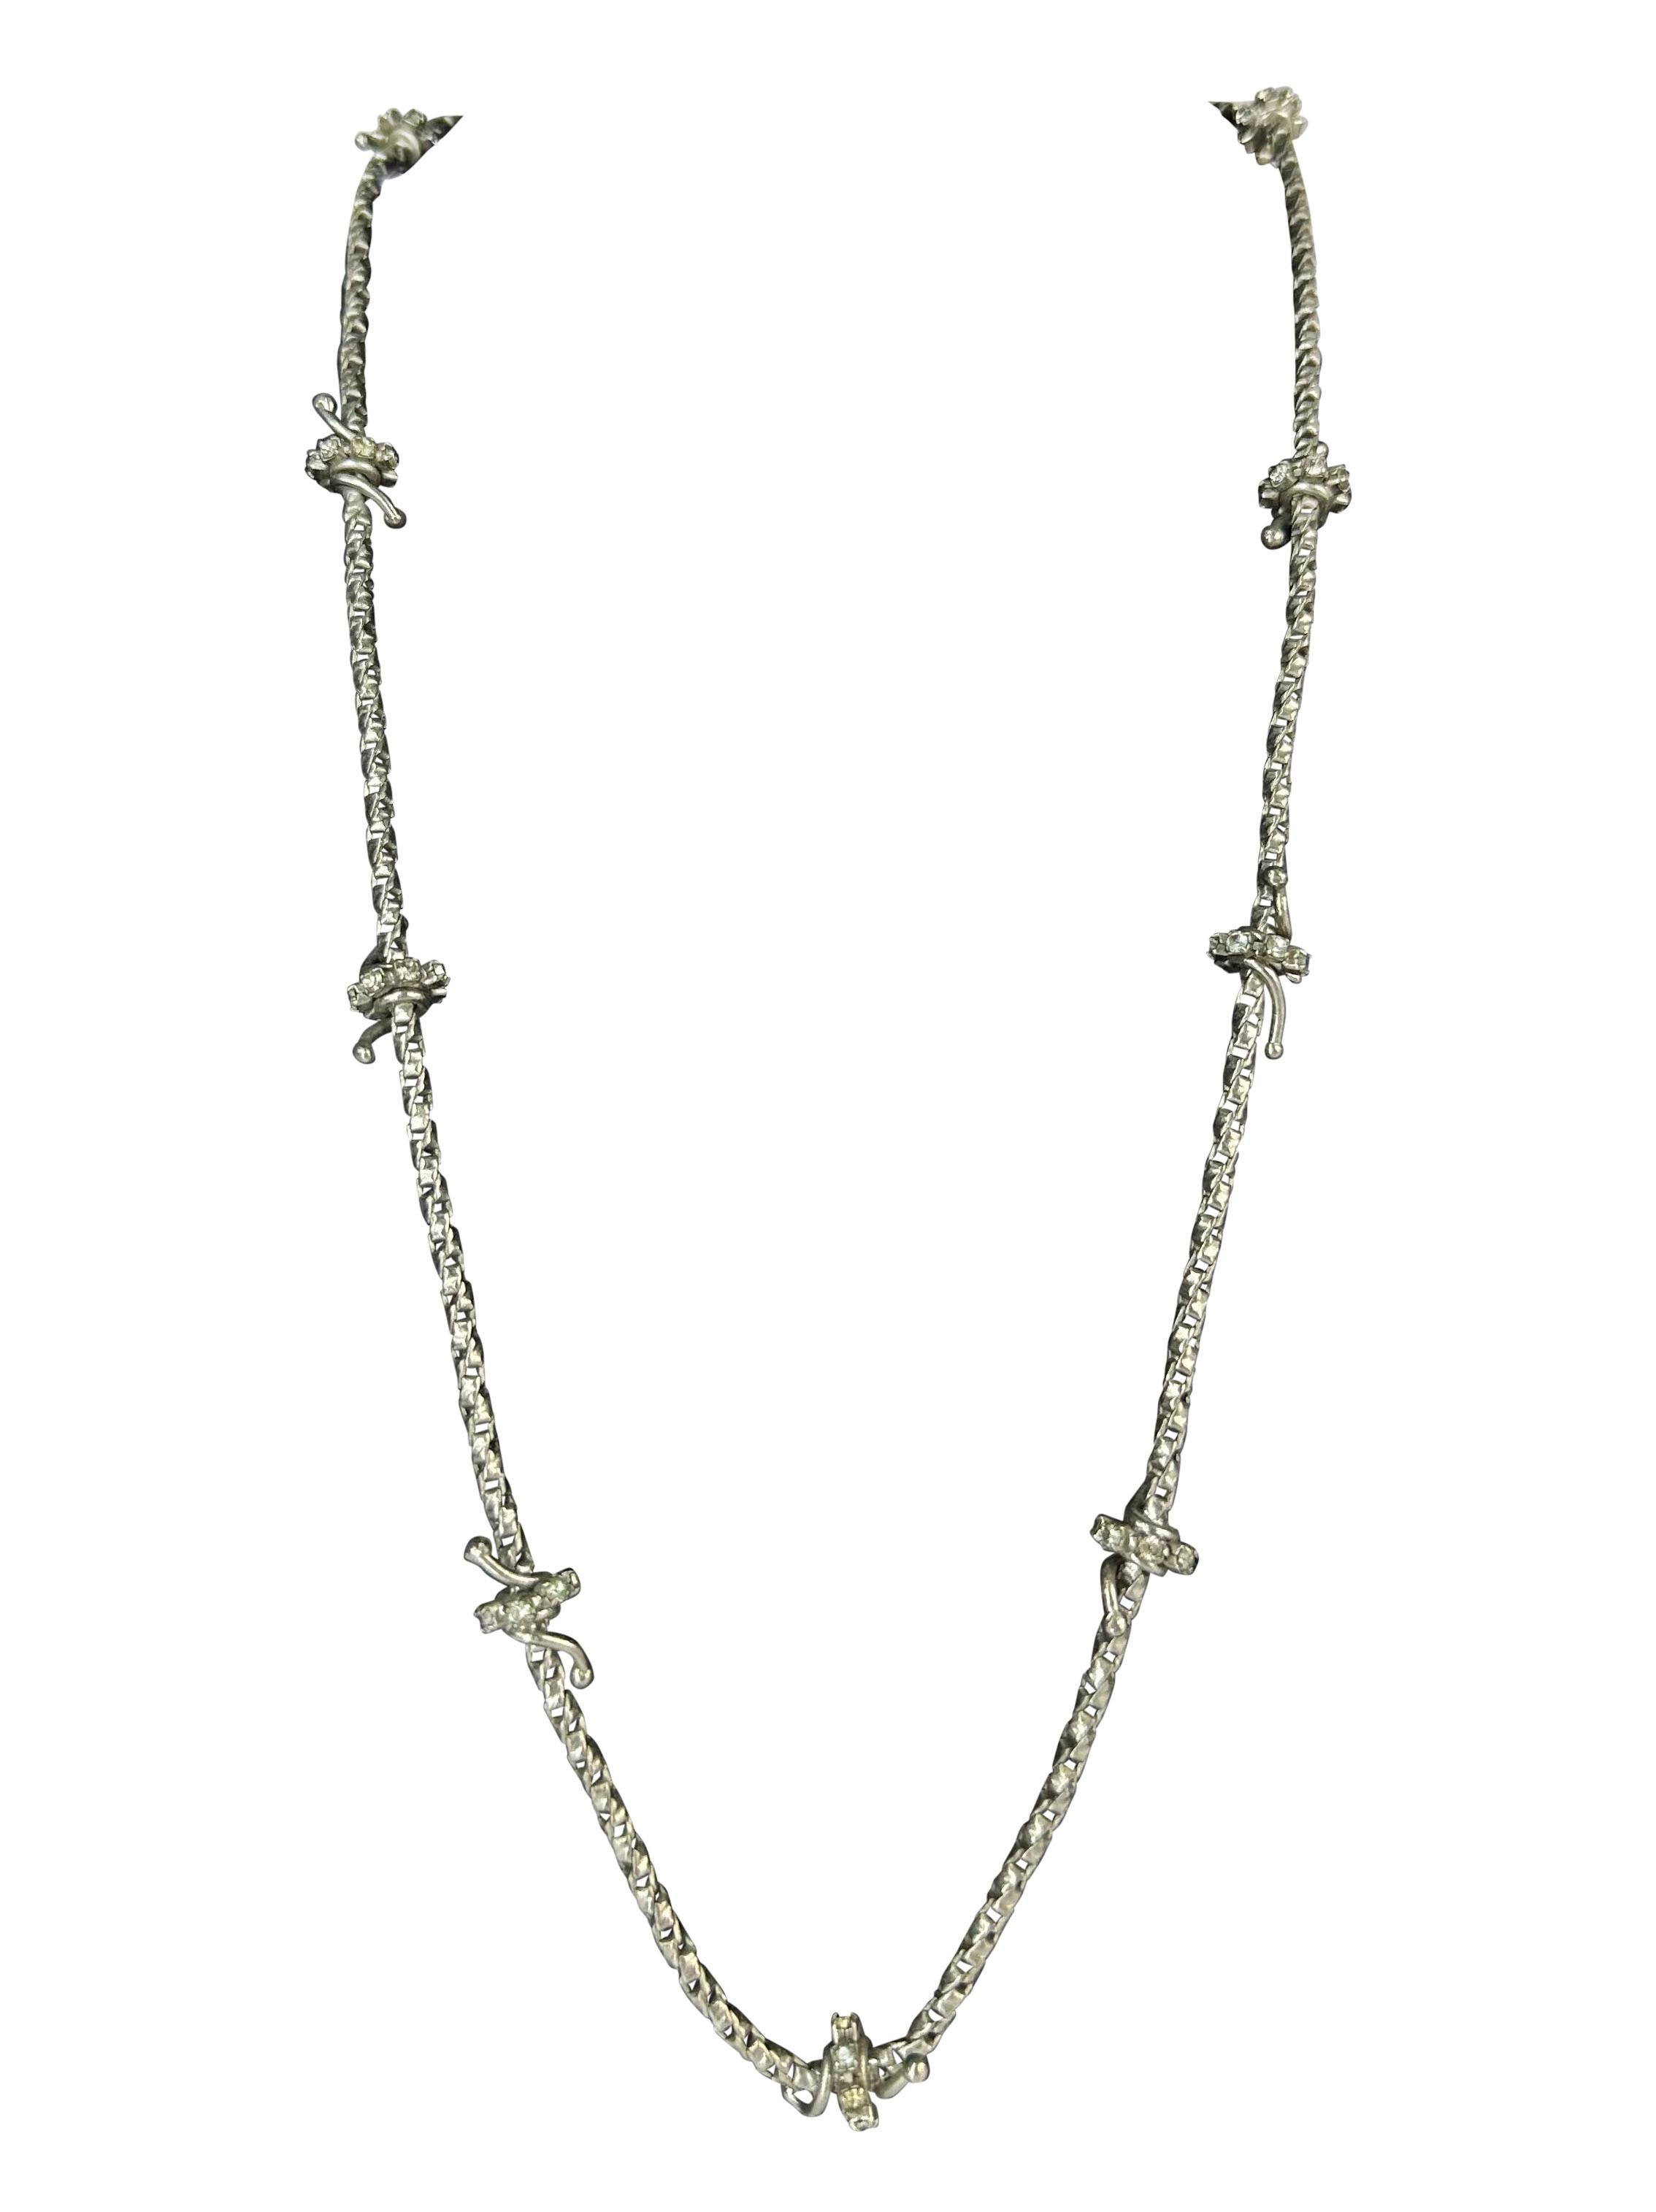 Voici un collier Gianni Versace à fil dénudé, orné de strass en argent, conçu par Donatella Versace. Issu de la collection Automne/Hiver 1998, ce collier est constitué d'une fine chaîne en métal argenté avec des détails métalliques enveloppés et